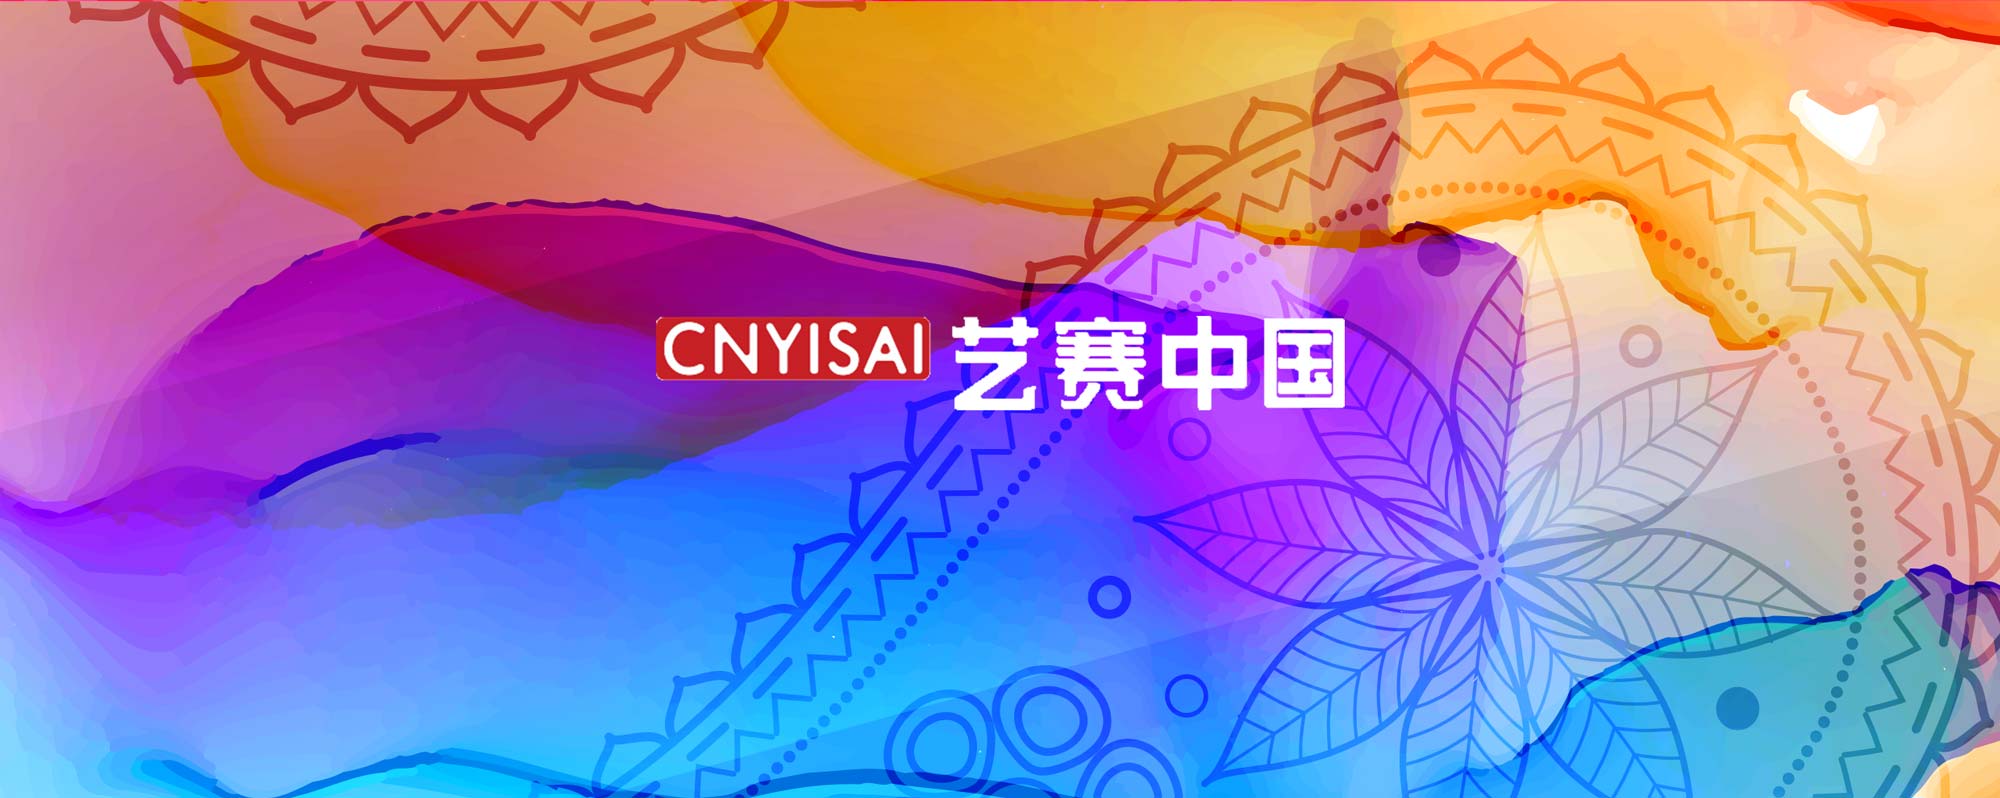 [获奖查询]第二届铸剑杯·纪念人民军工创建九十周年 文化创意大赛-CNYISAI艺赛